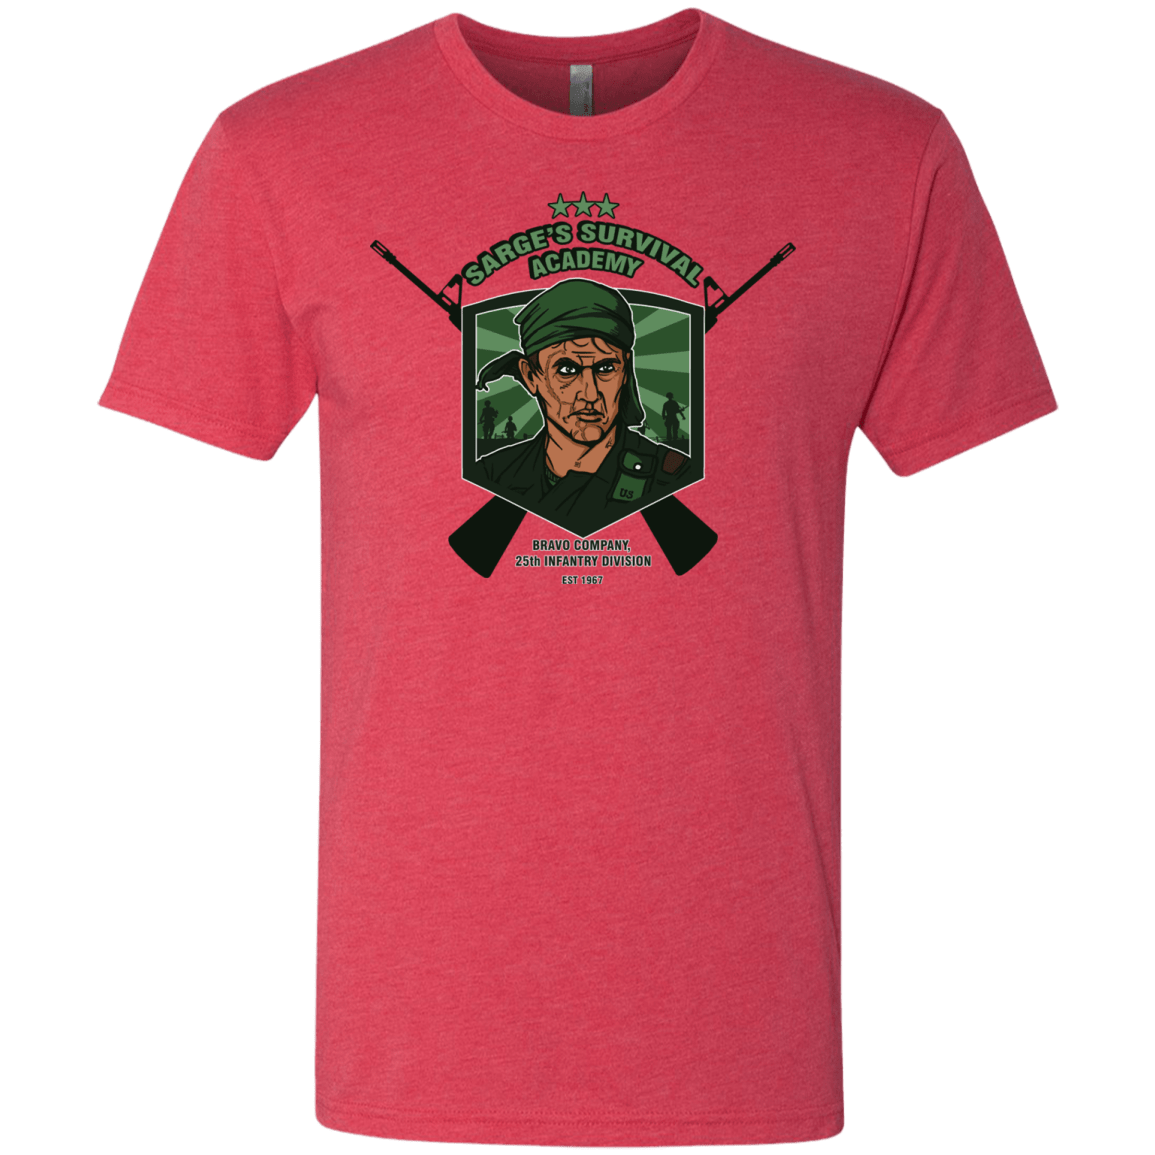 Sarges Survival Men's Triblend T-Shirt